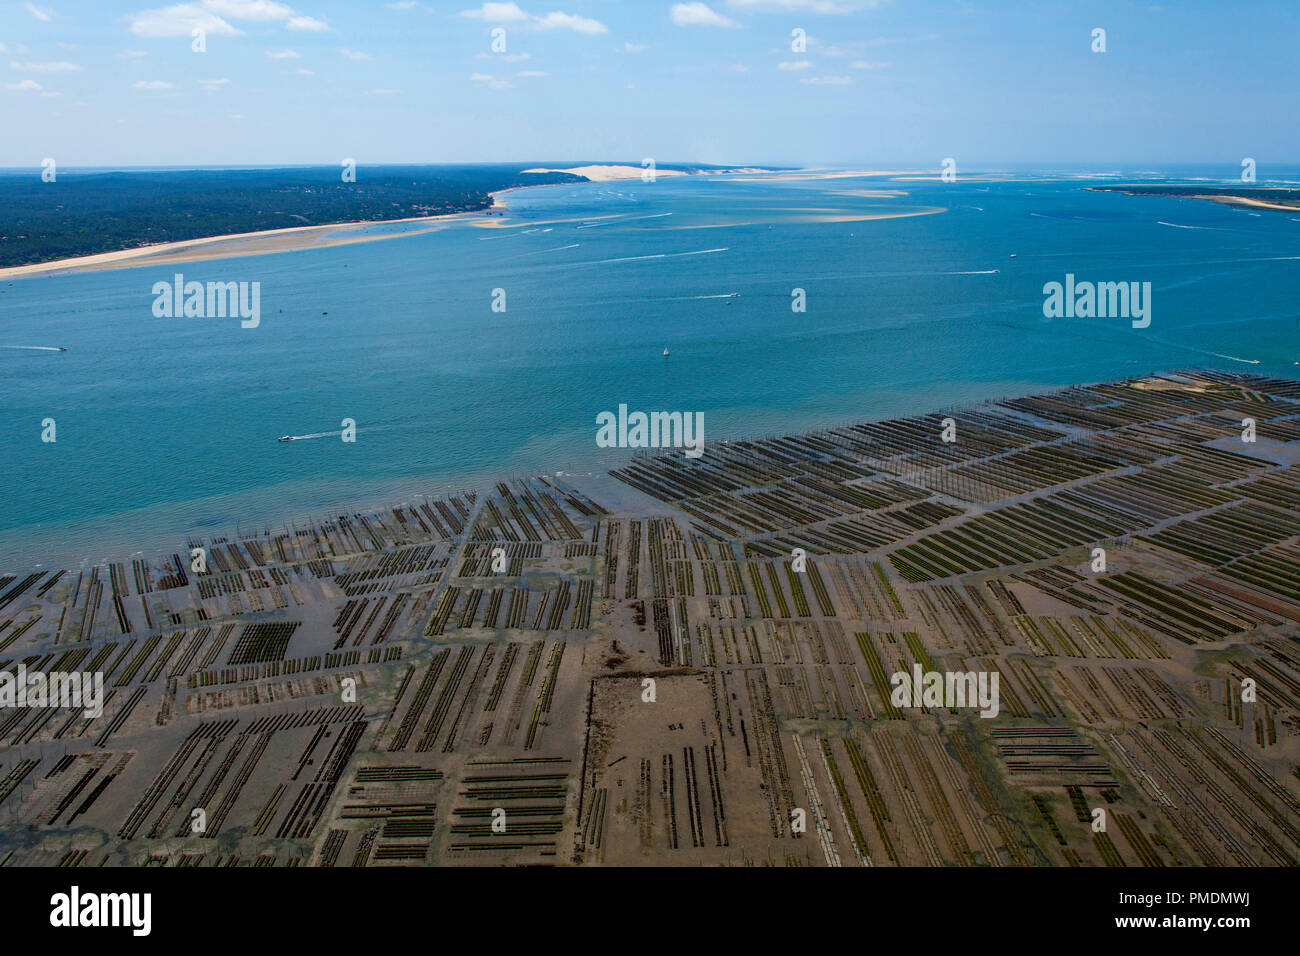 Arcachon Bay (suroeste de Francia): vista aérea de criaderos de ostras. Viveros de ostras de la Restinga, cerca del "Ile aux oiseaux" (Isla de pájaro (no disponible) Foto de stock